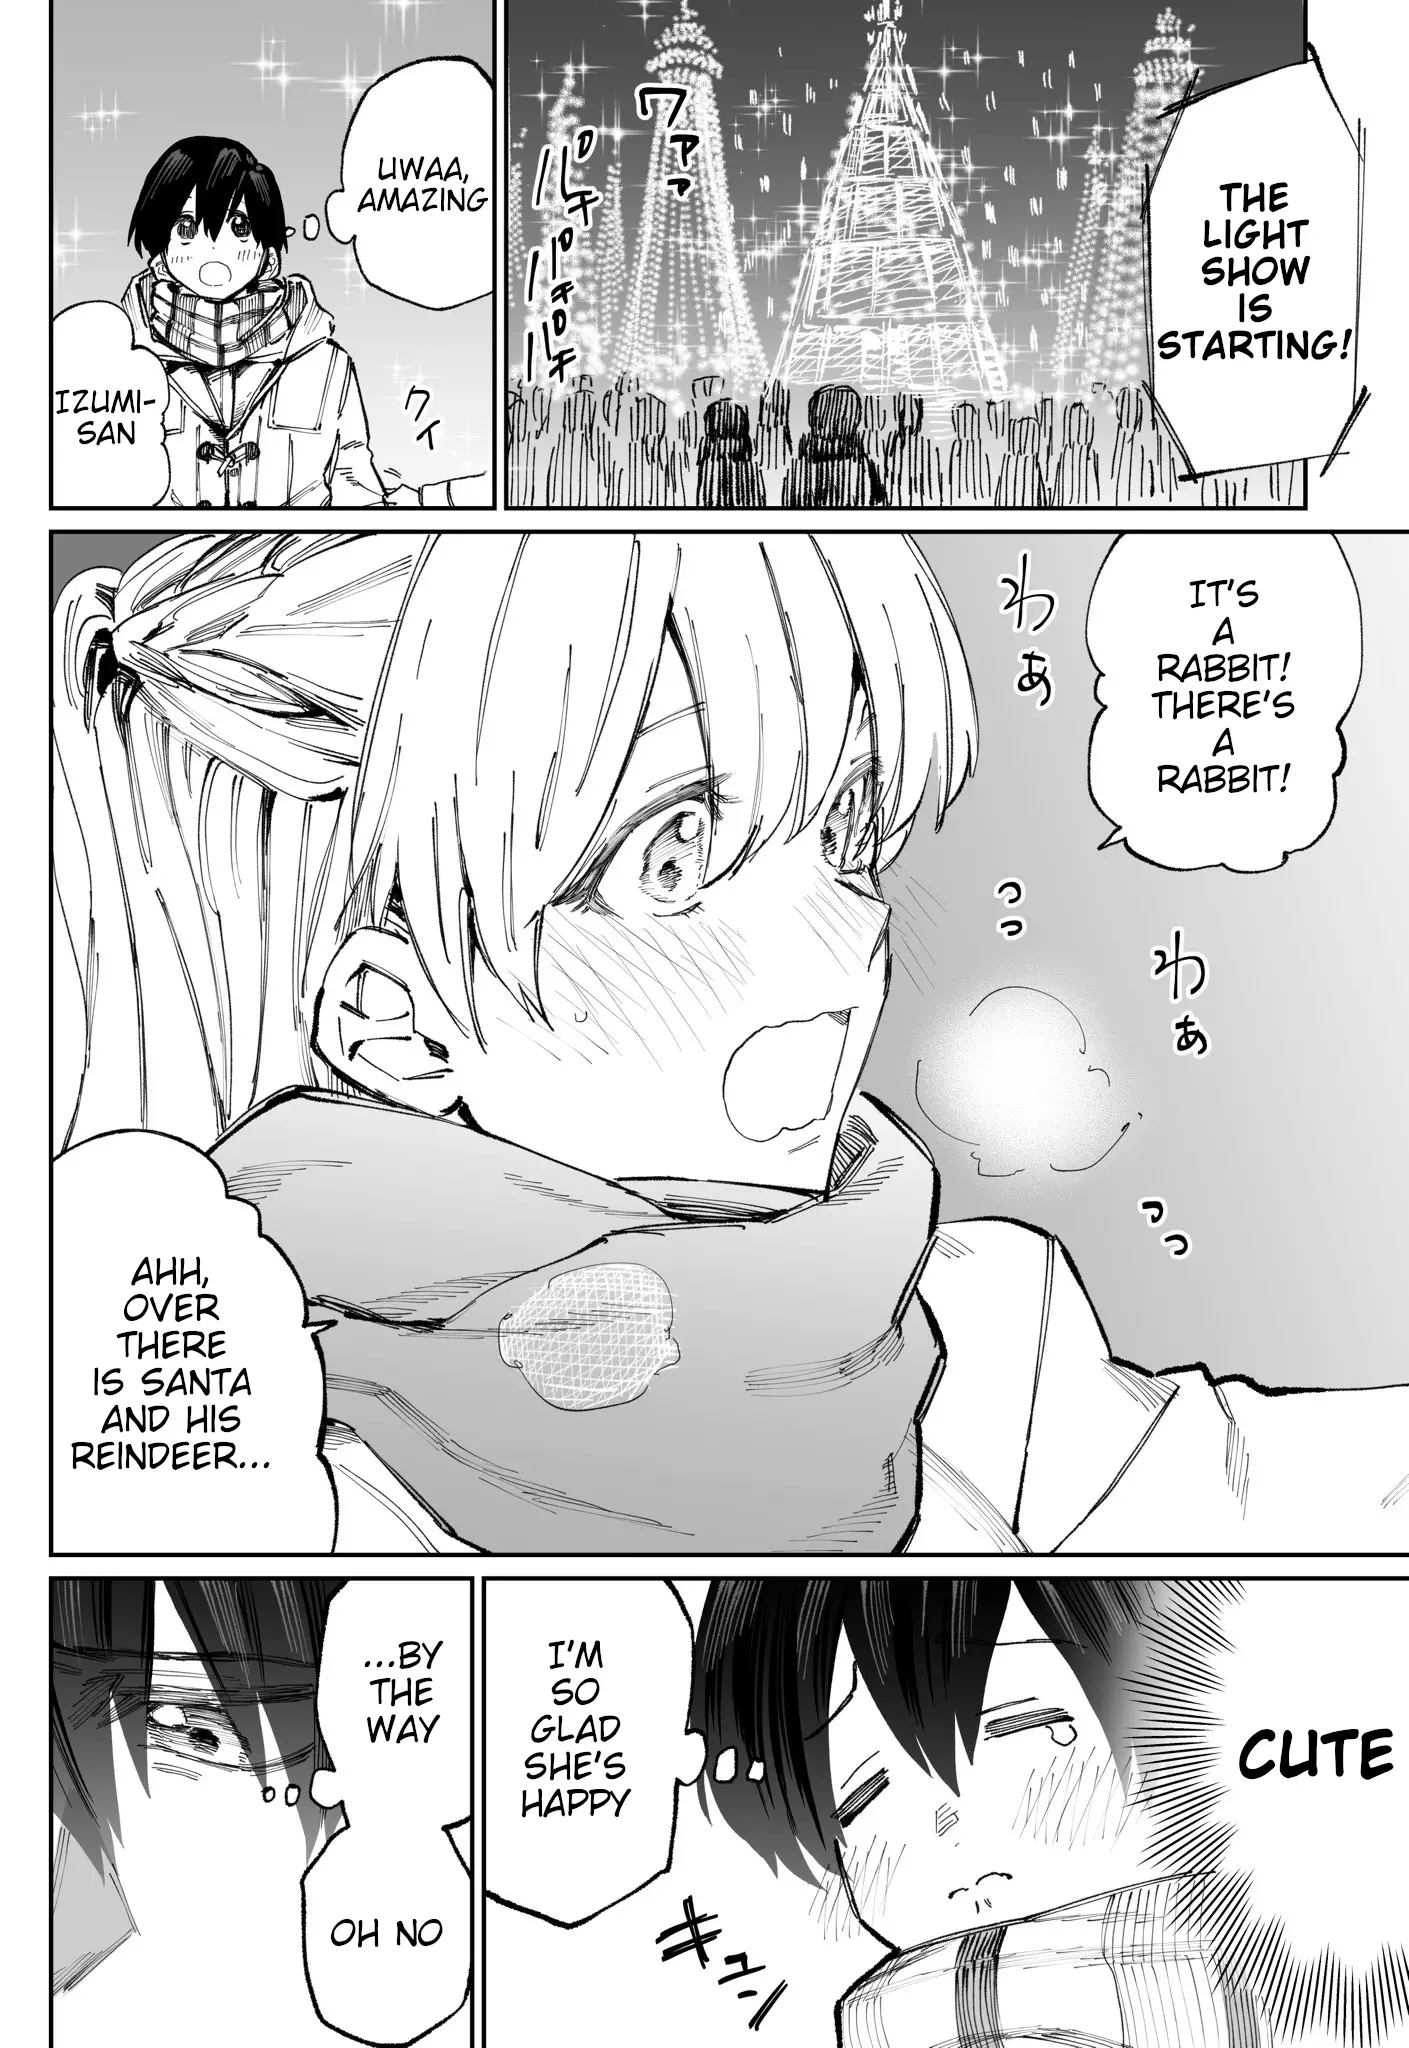 Shikimori's Not Just A Cutie - 7 page 3